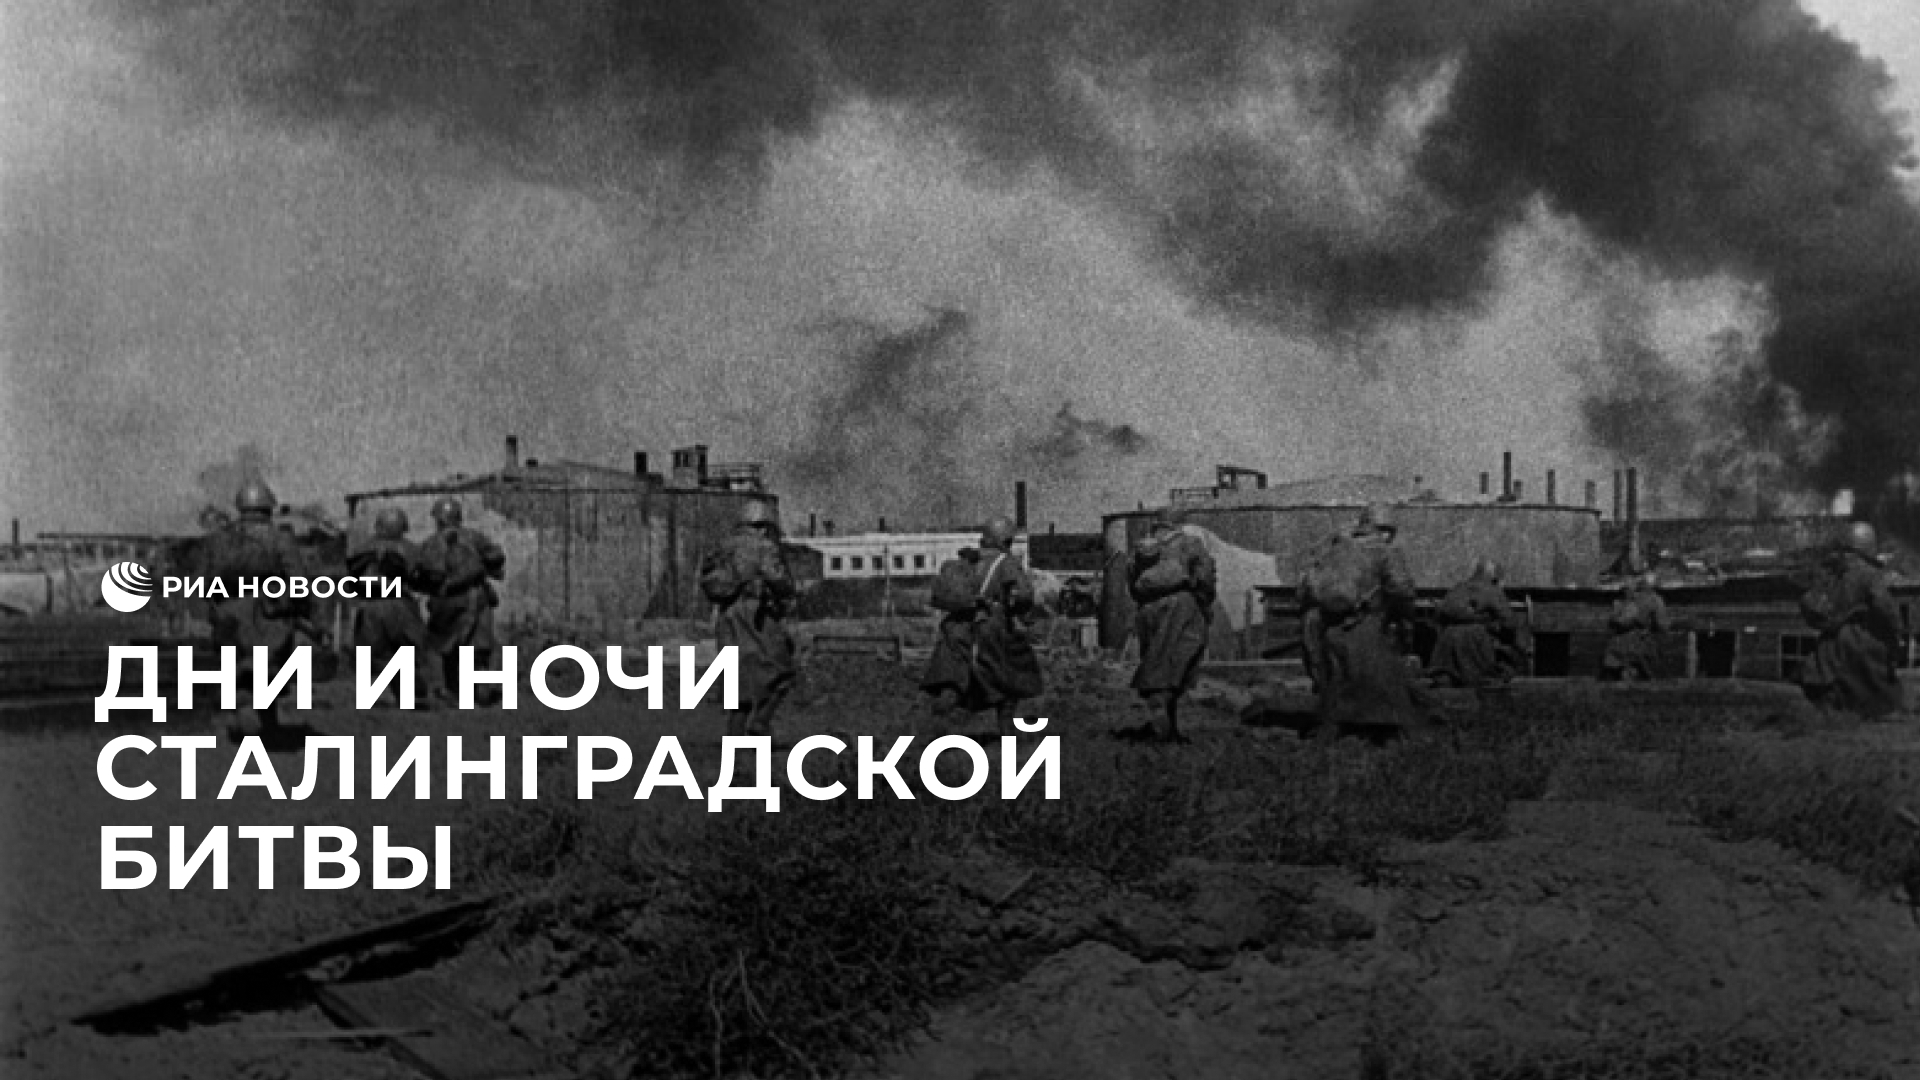 80 лет назад началась Сталинградская битва